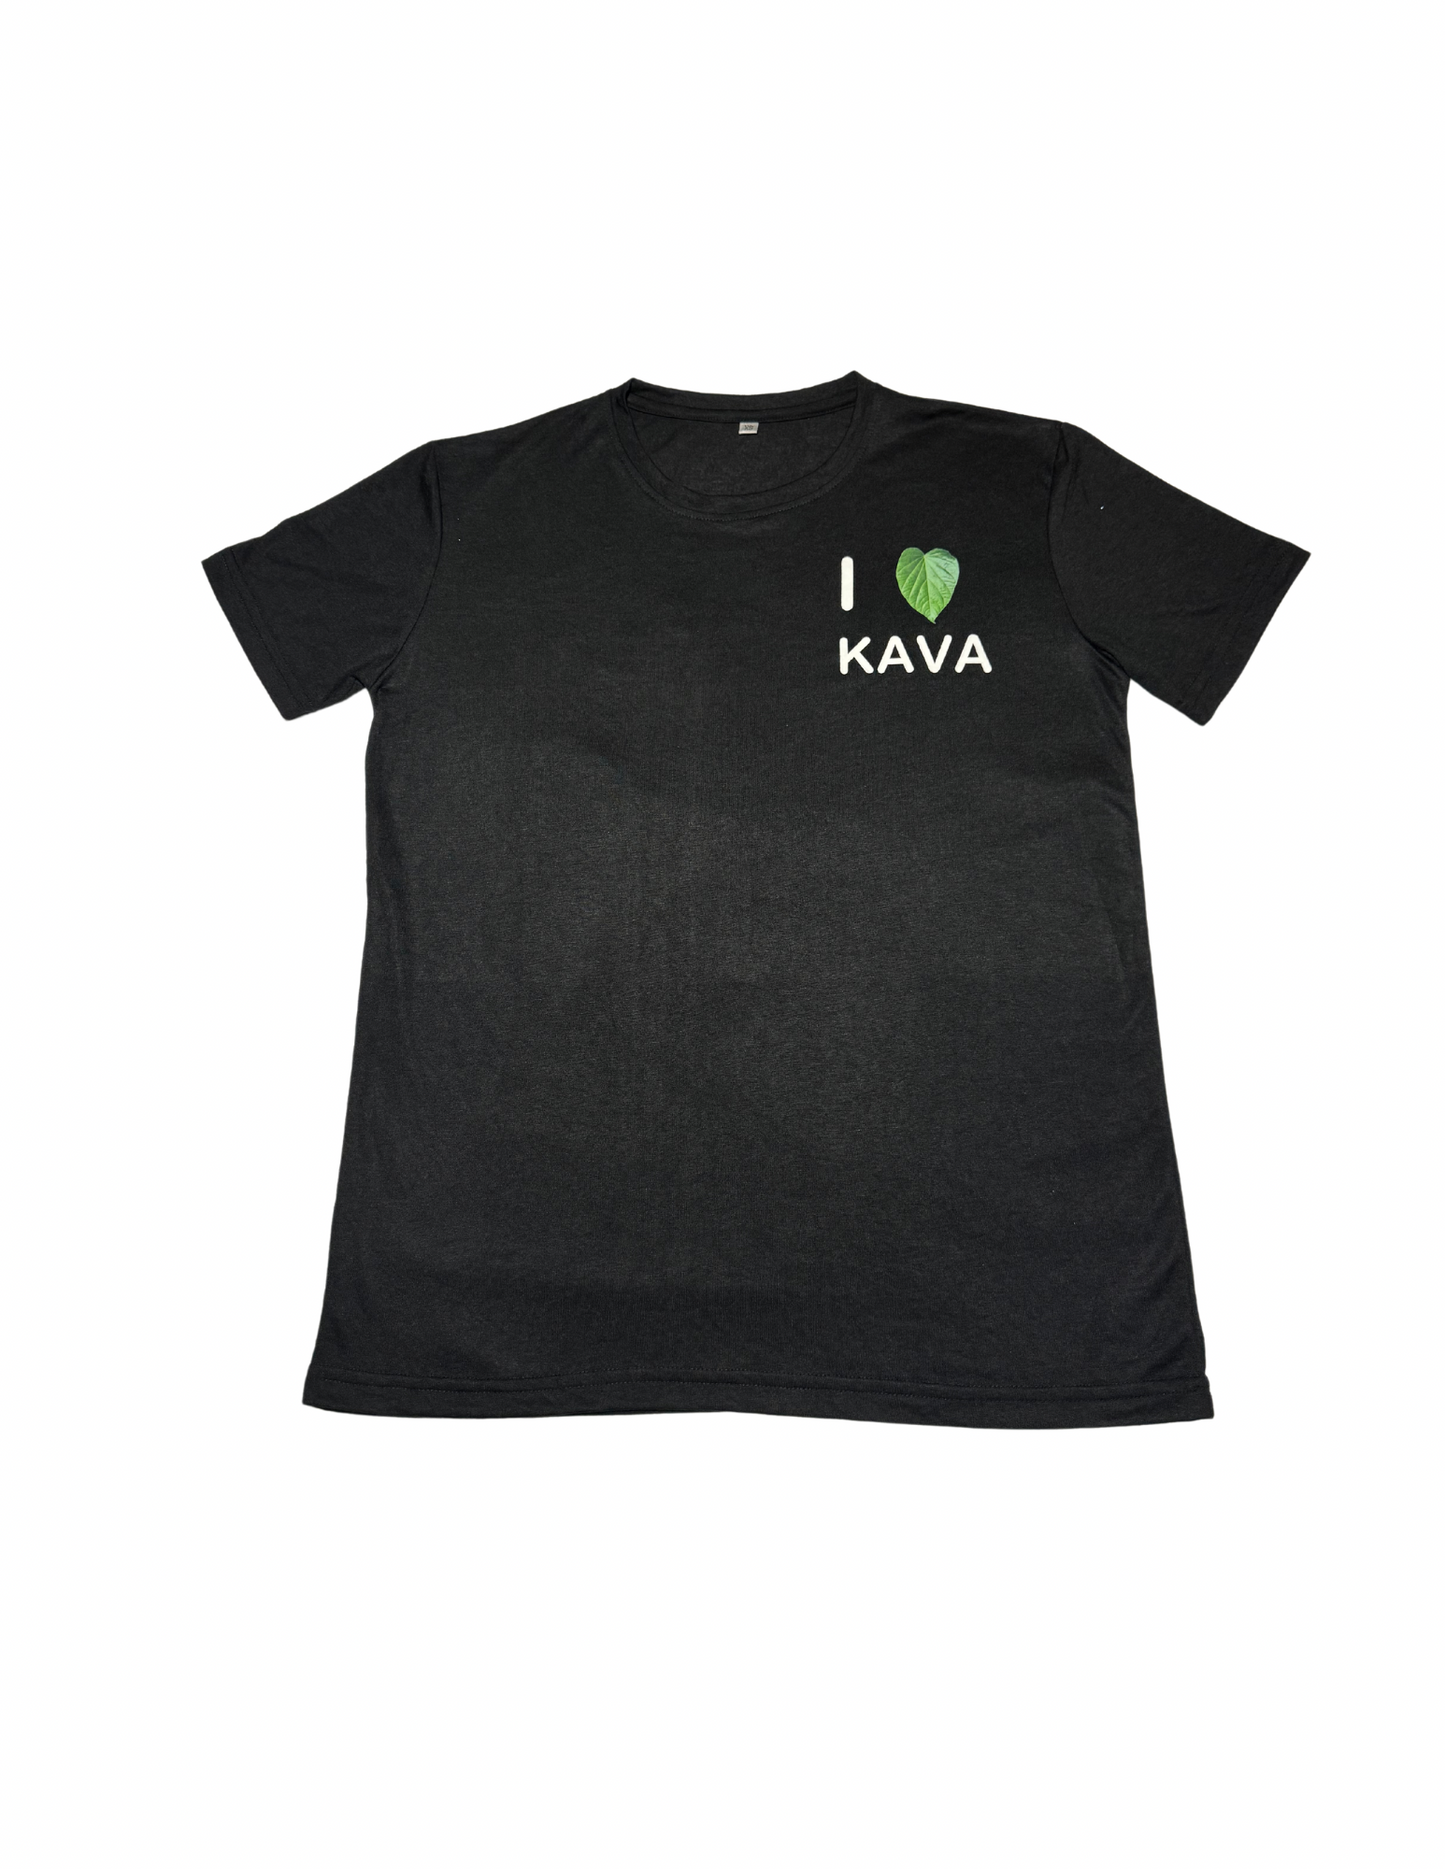 I heart Kava